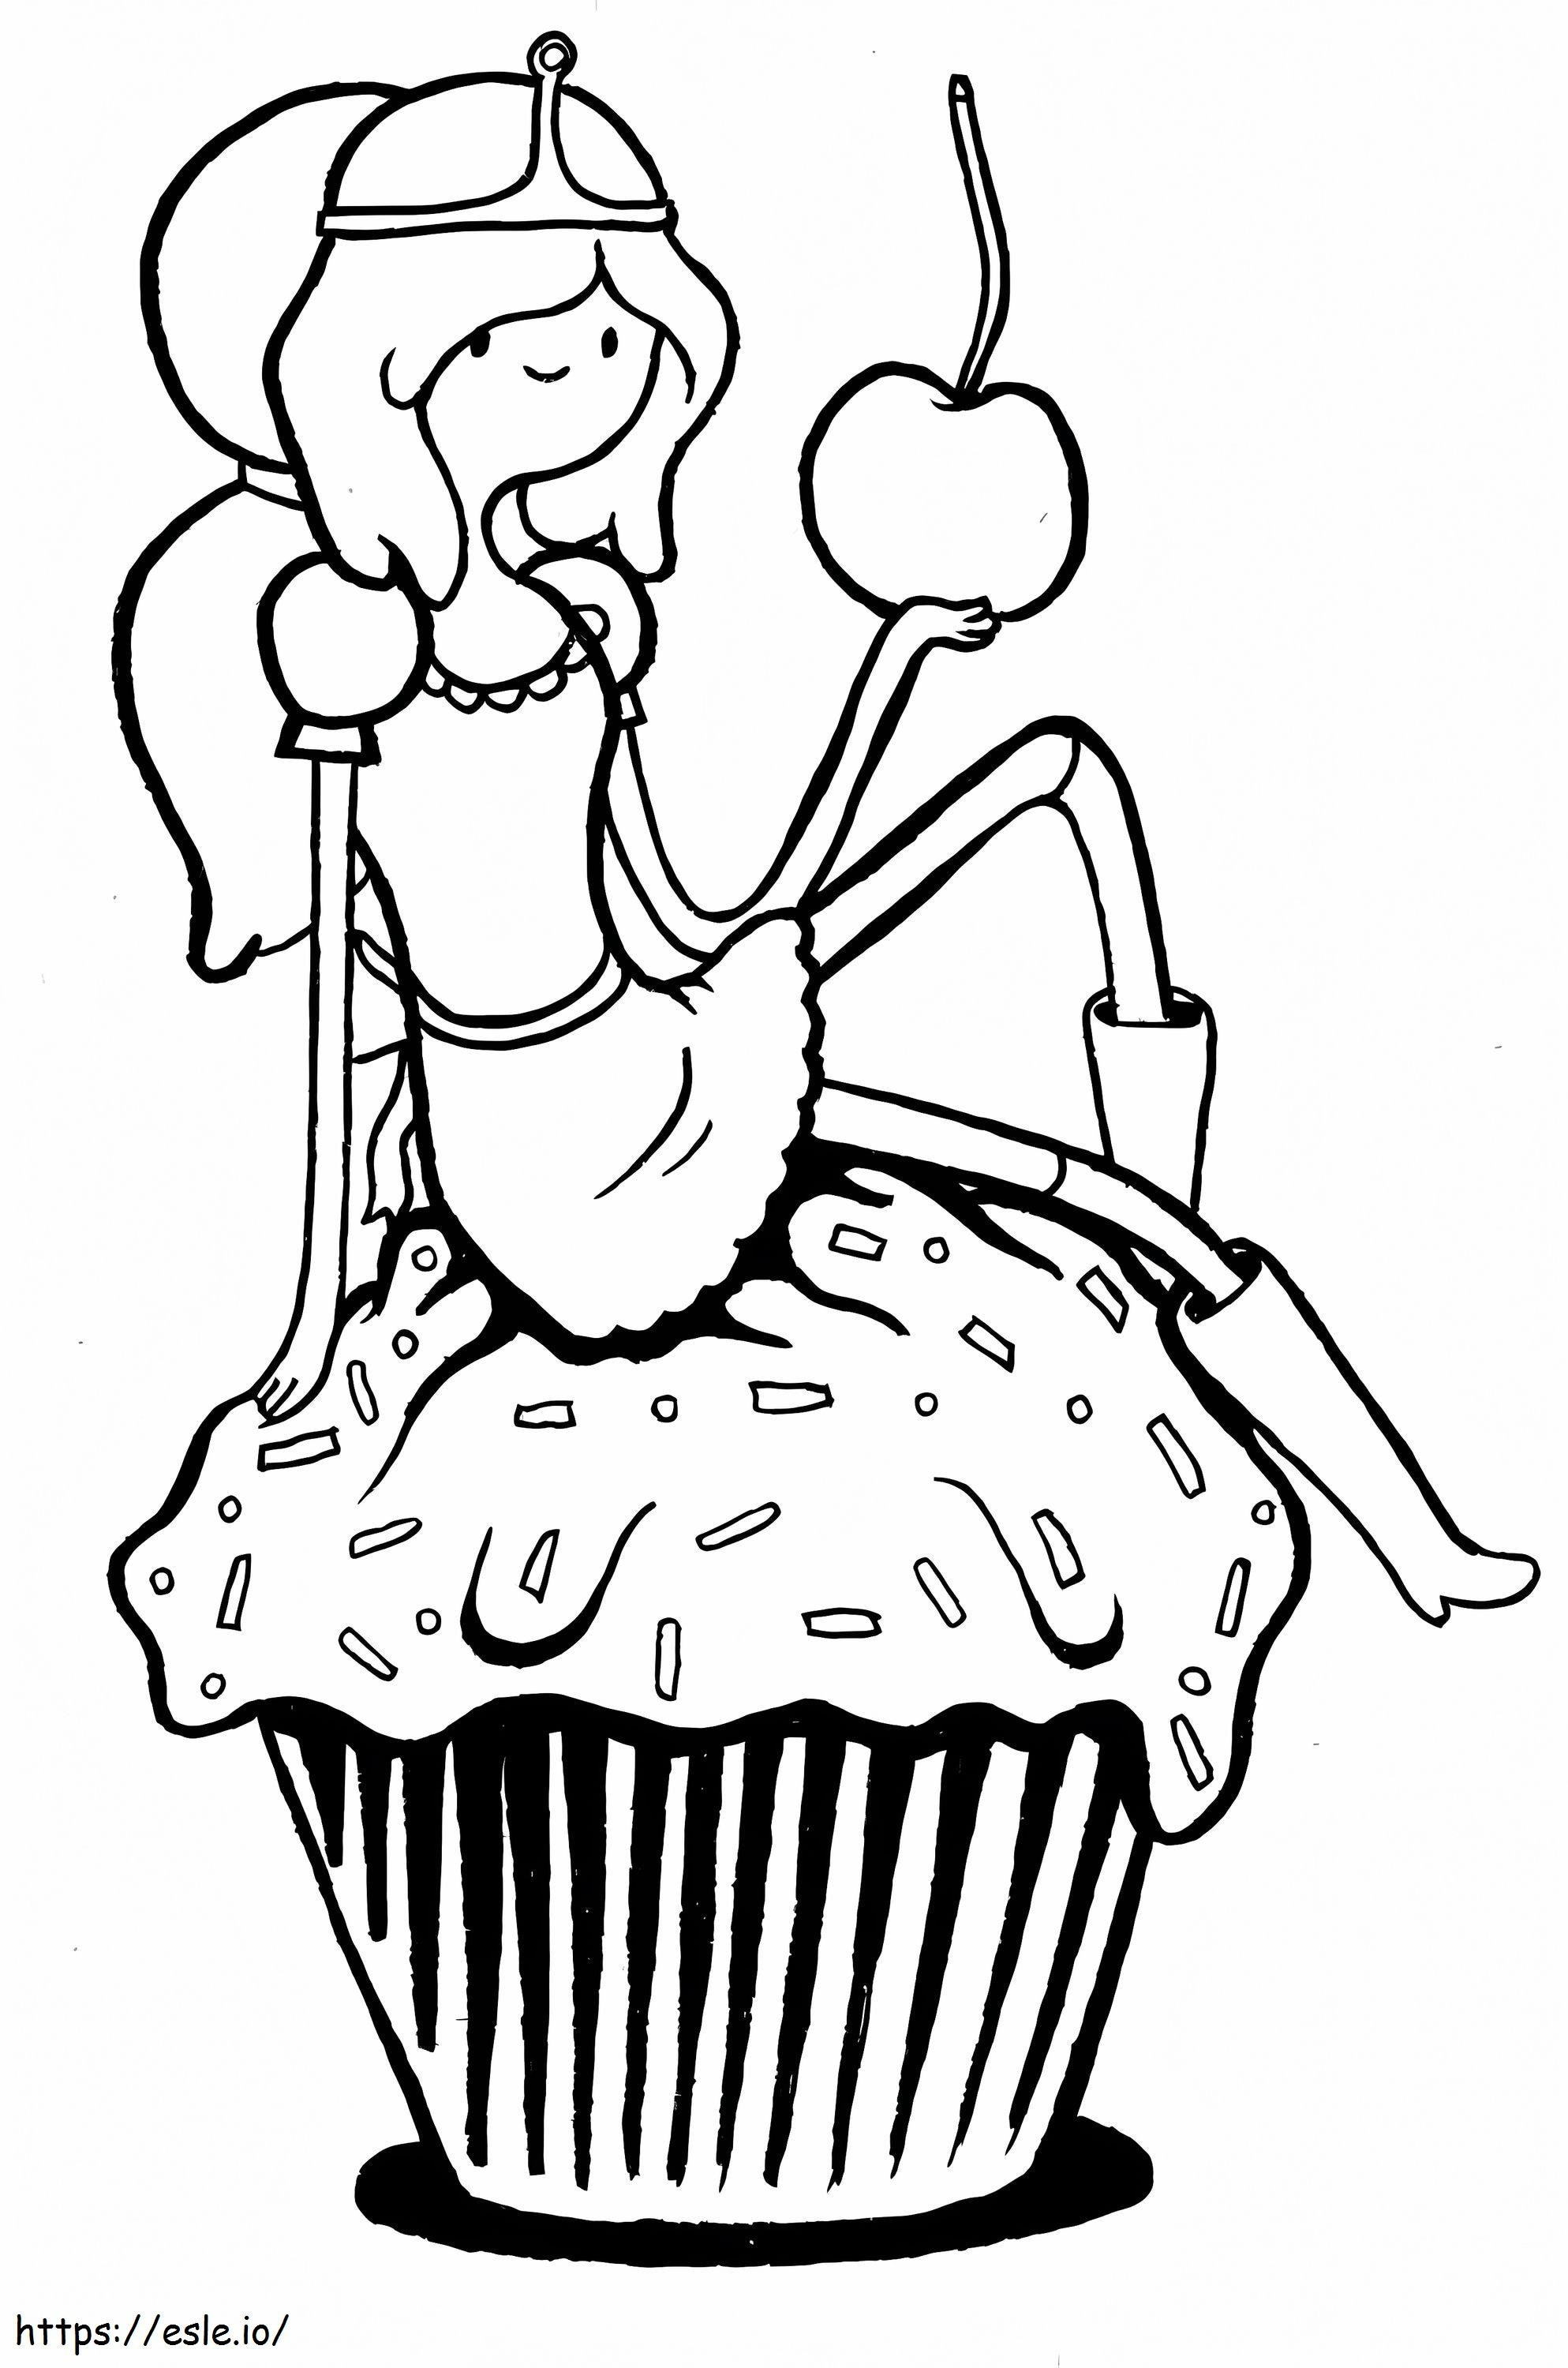 Prințesa Bubblegum Ține mărul și sta pe cupcake de colorat